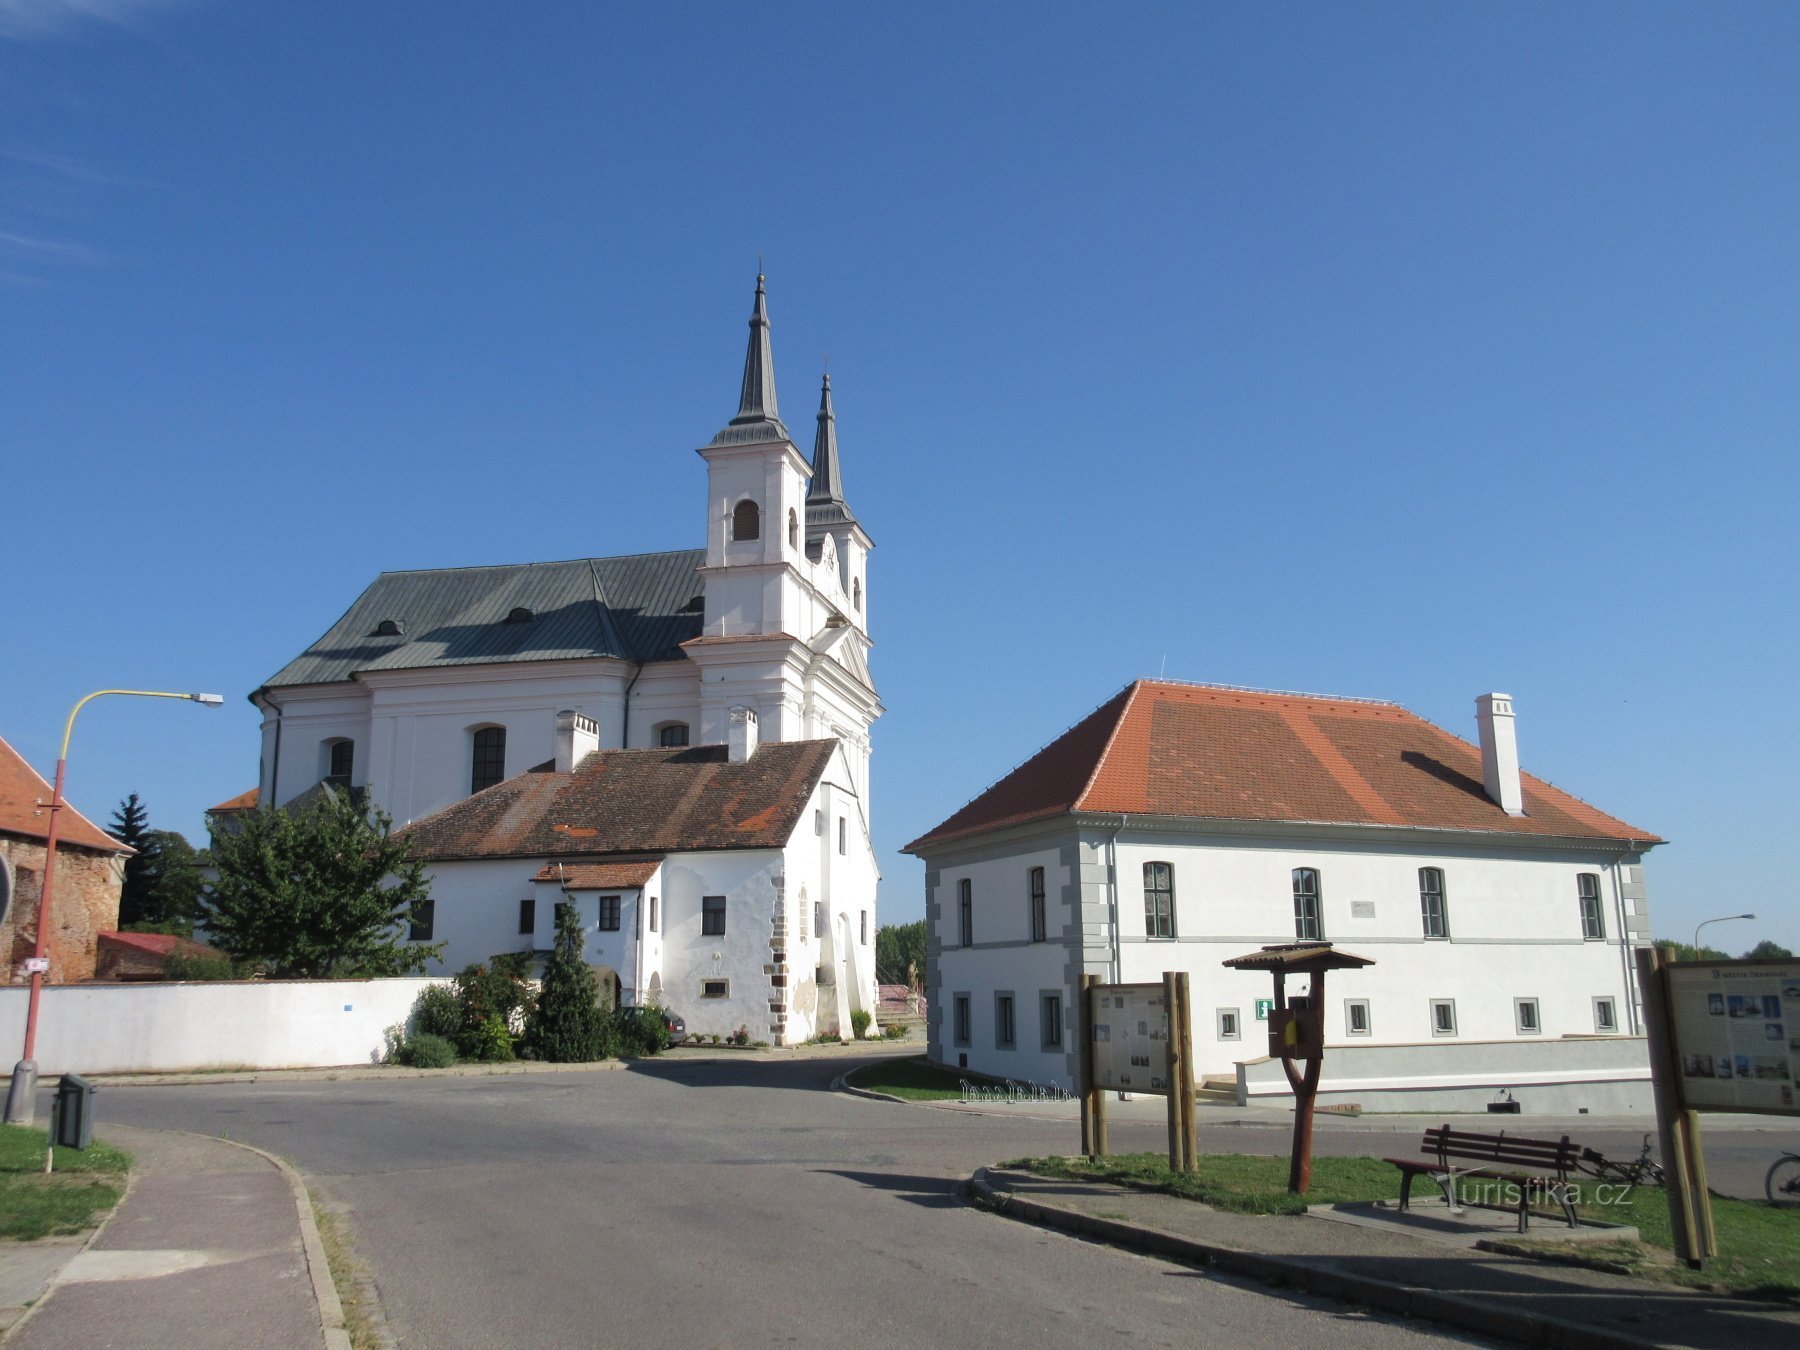 Kirke med præstegård og rådhus